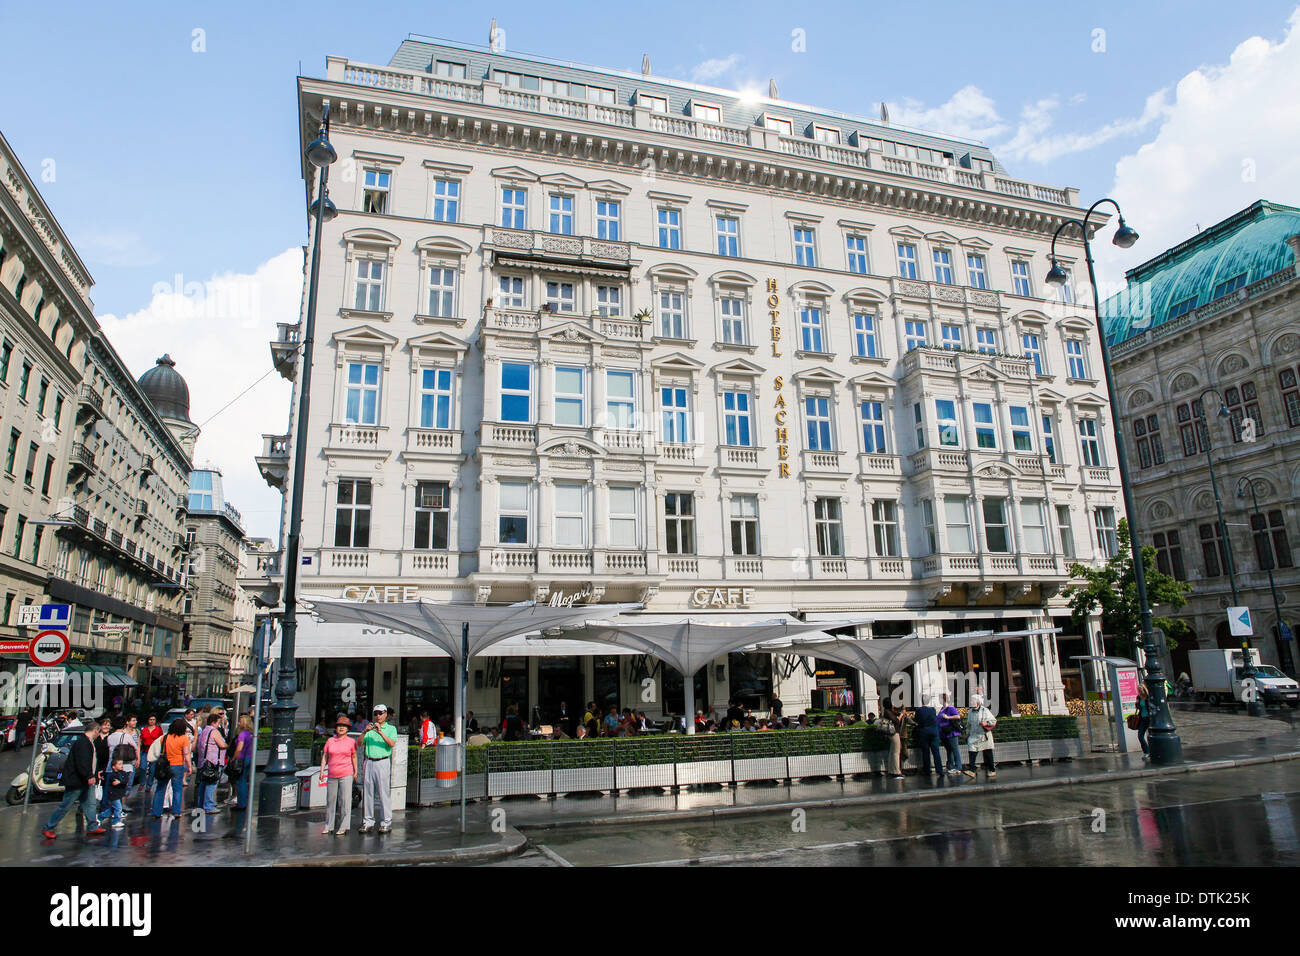 L'hôtel Sacher, un hôtel cinq étoiles situé dans le premier arrondissement Wieden de Vienne, Autriche. Banque D'Images